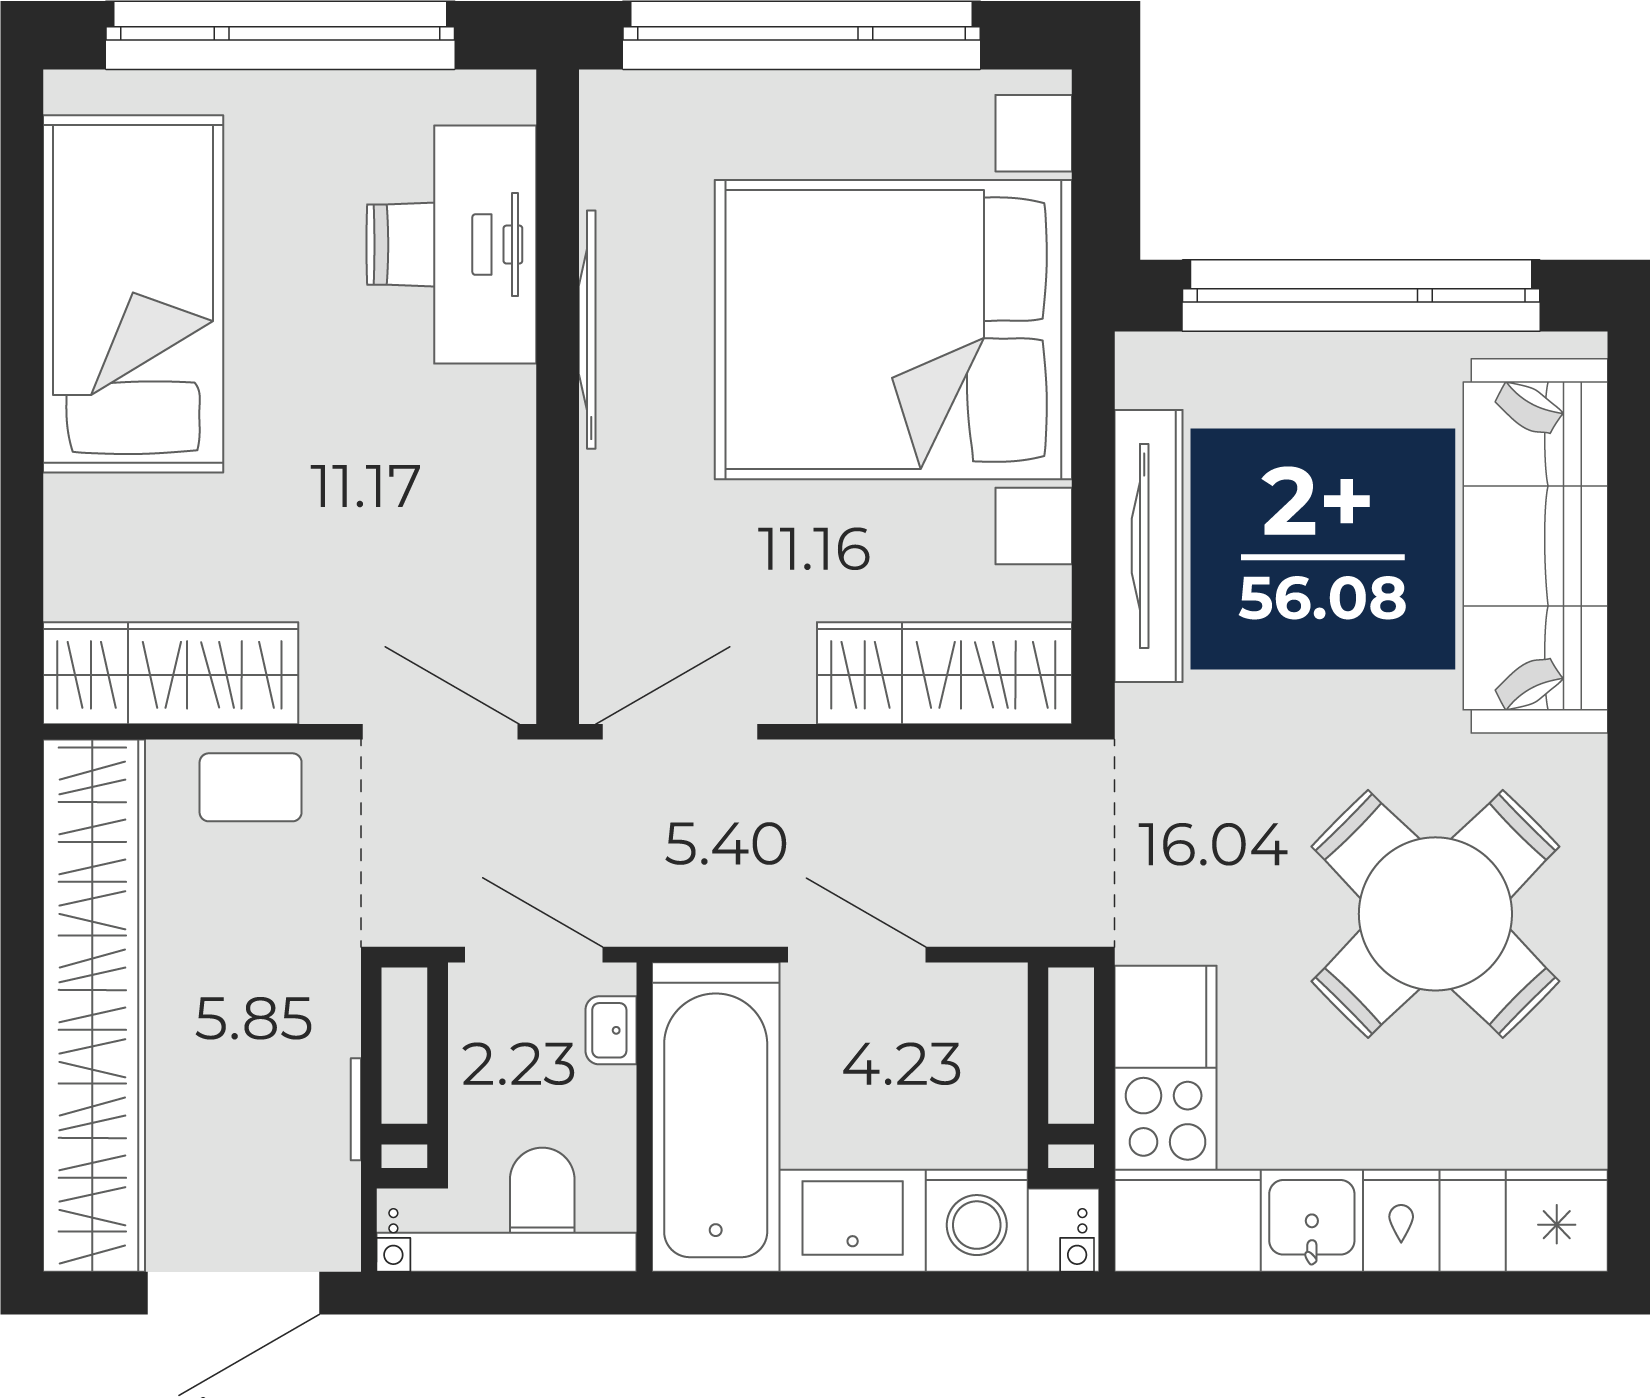 Квартира № 164, 2-комнатная, 56.08 кв. м, 6 этаж